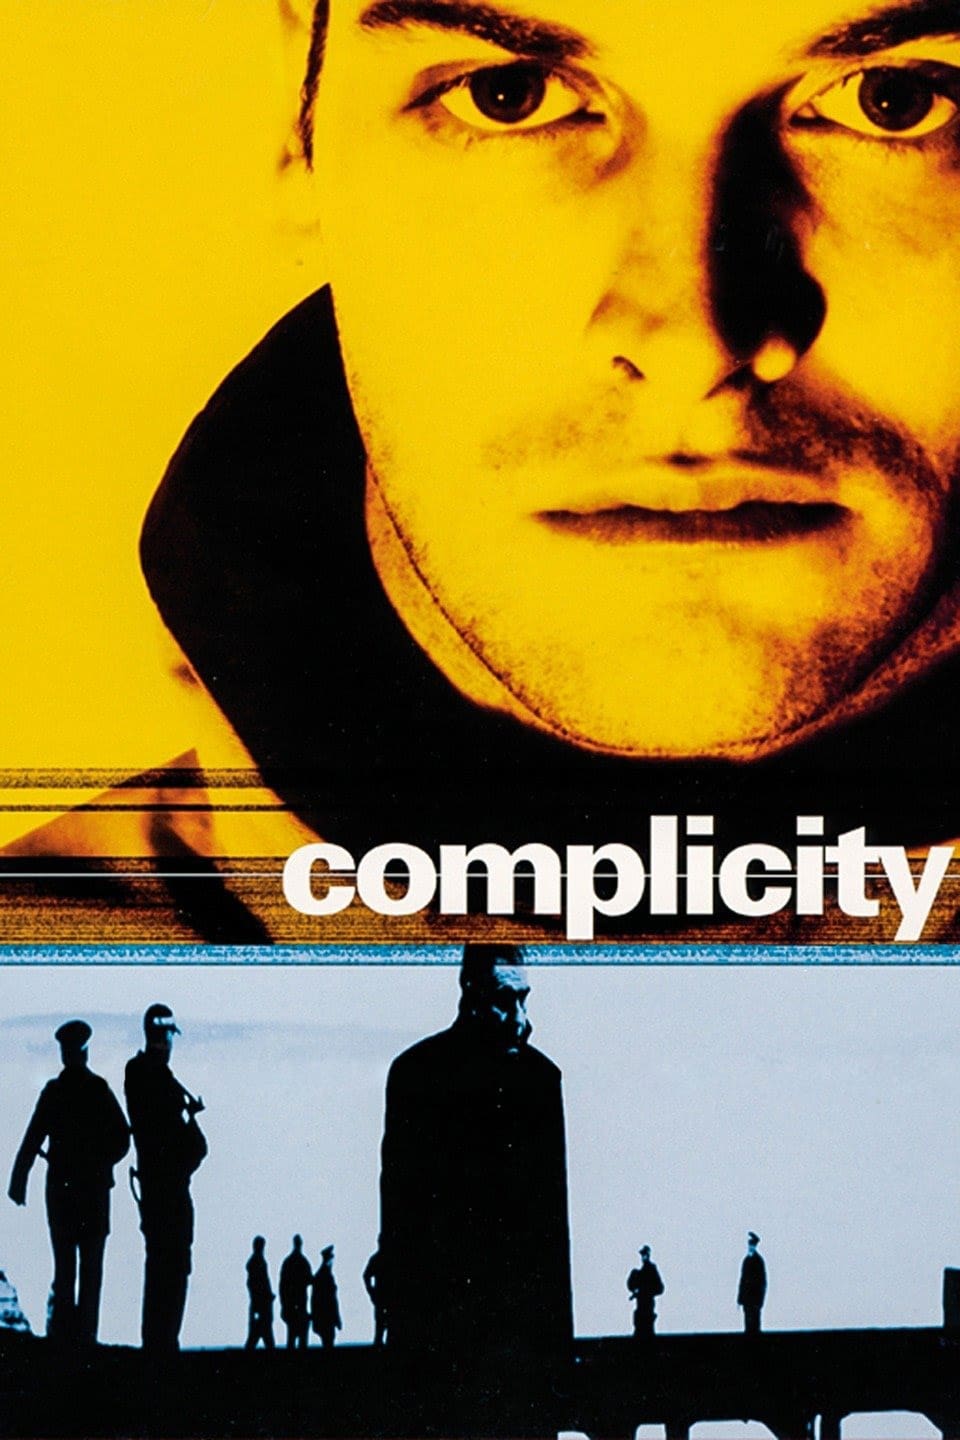 Complicity (2000) starring Jonny Lee Miller on DVD on DVD